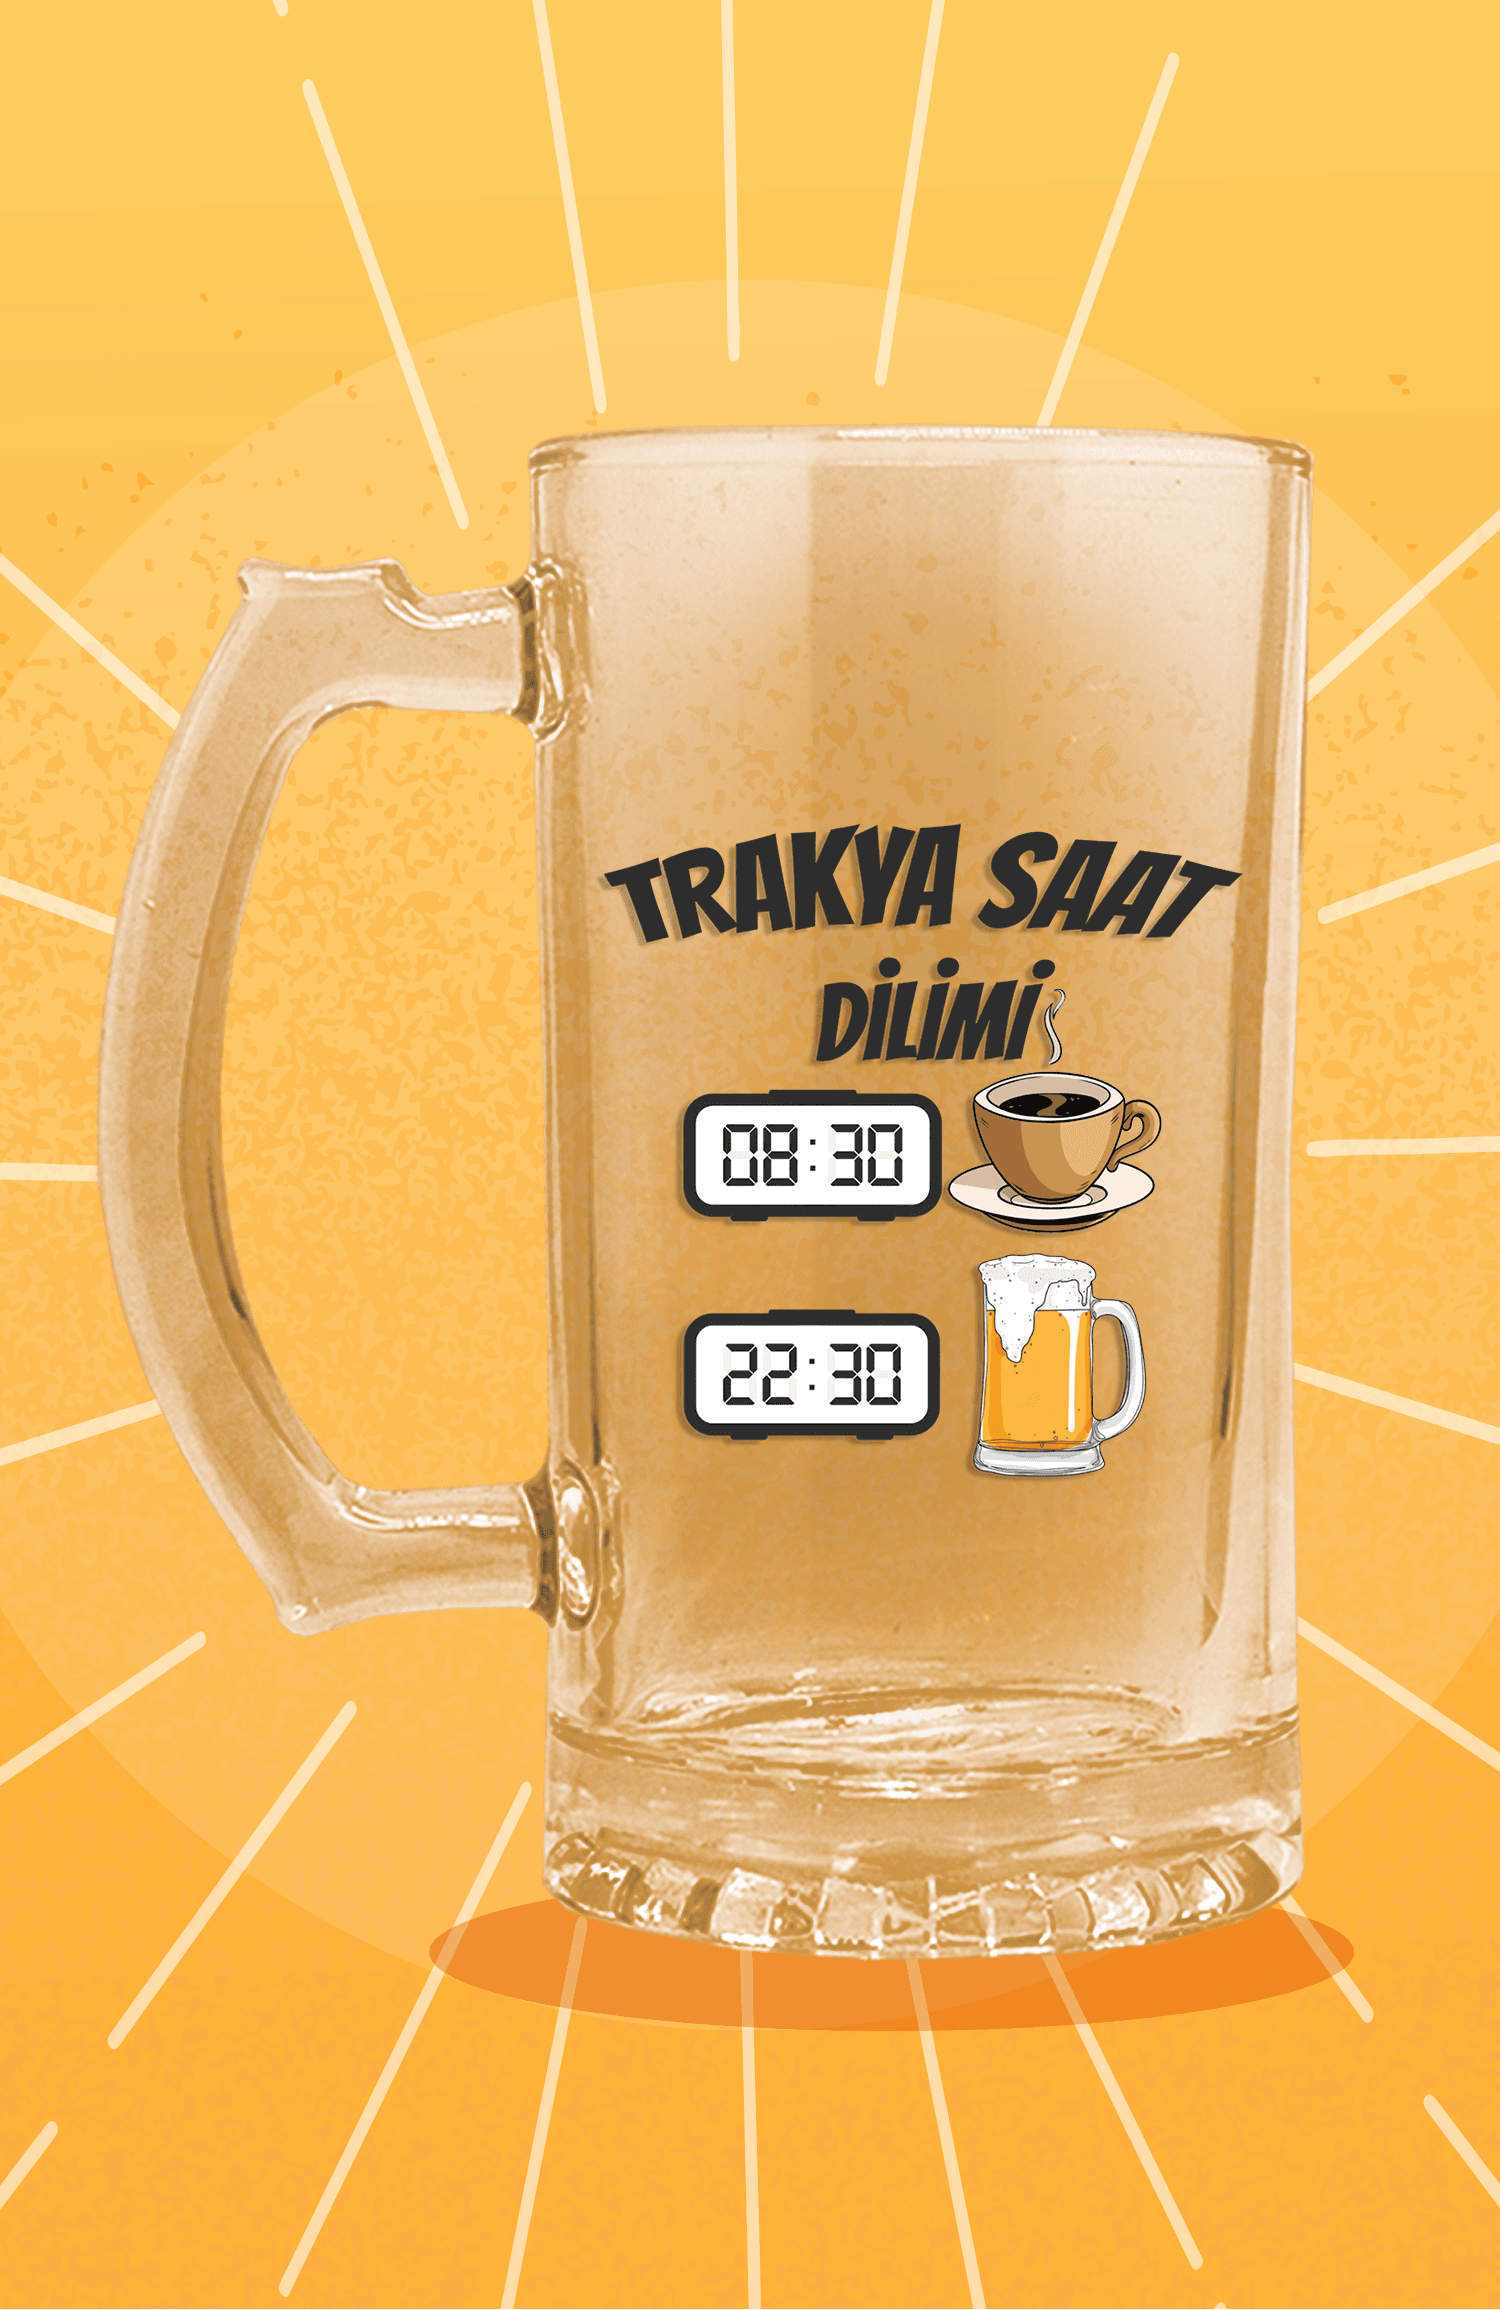 Trakya'da Saat Dilimi (Bira Bardağı)